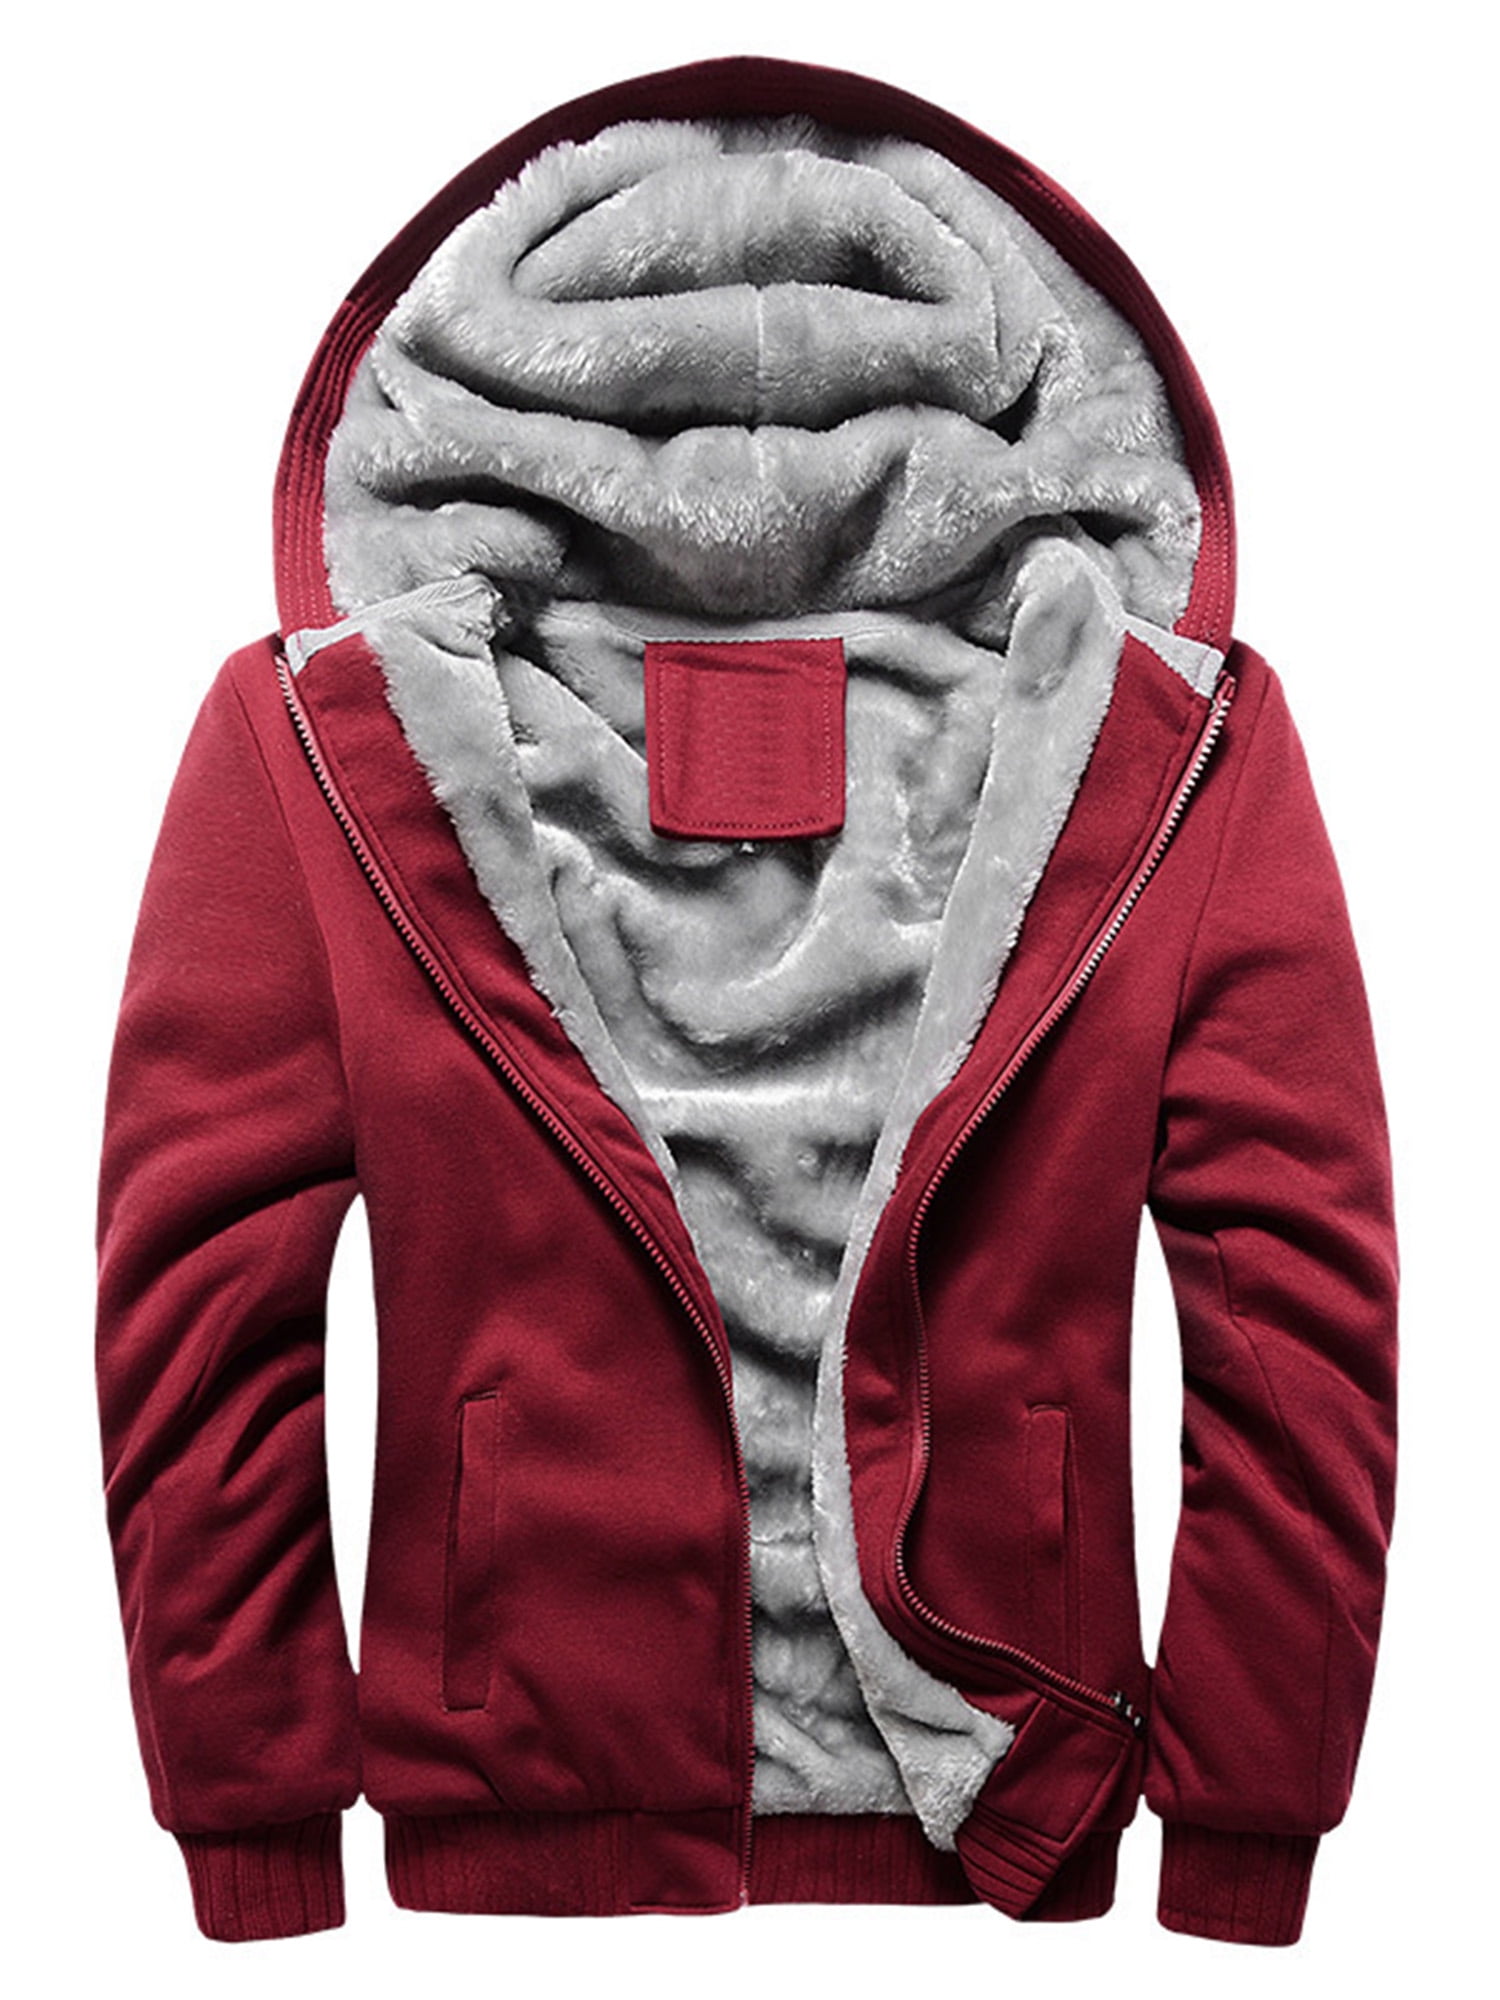 Tenslotte zwaard Uitvoerder Heavyweight Fleece Lined Drawstring Hoodies for Men Fashion Color Block  Full Zip Up Warm Winter Sweatshirts Work Jackets - Walmart.com